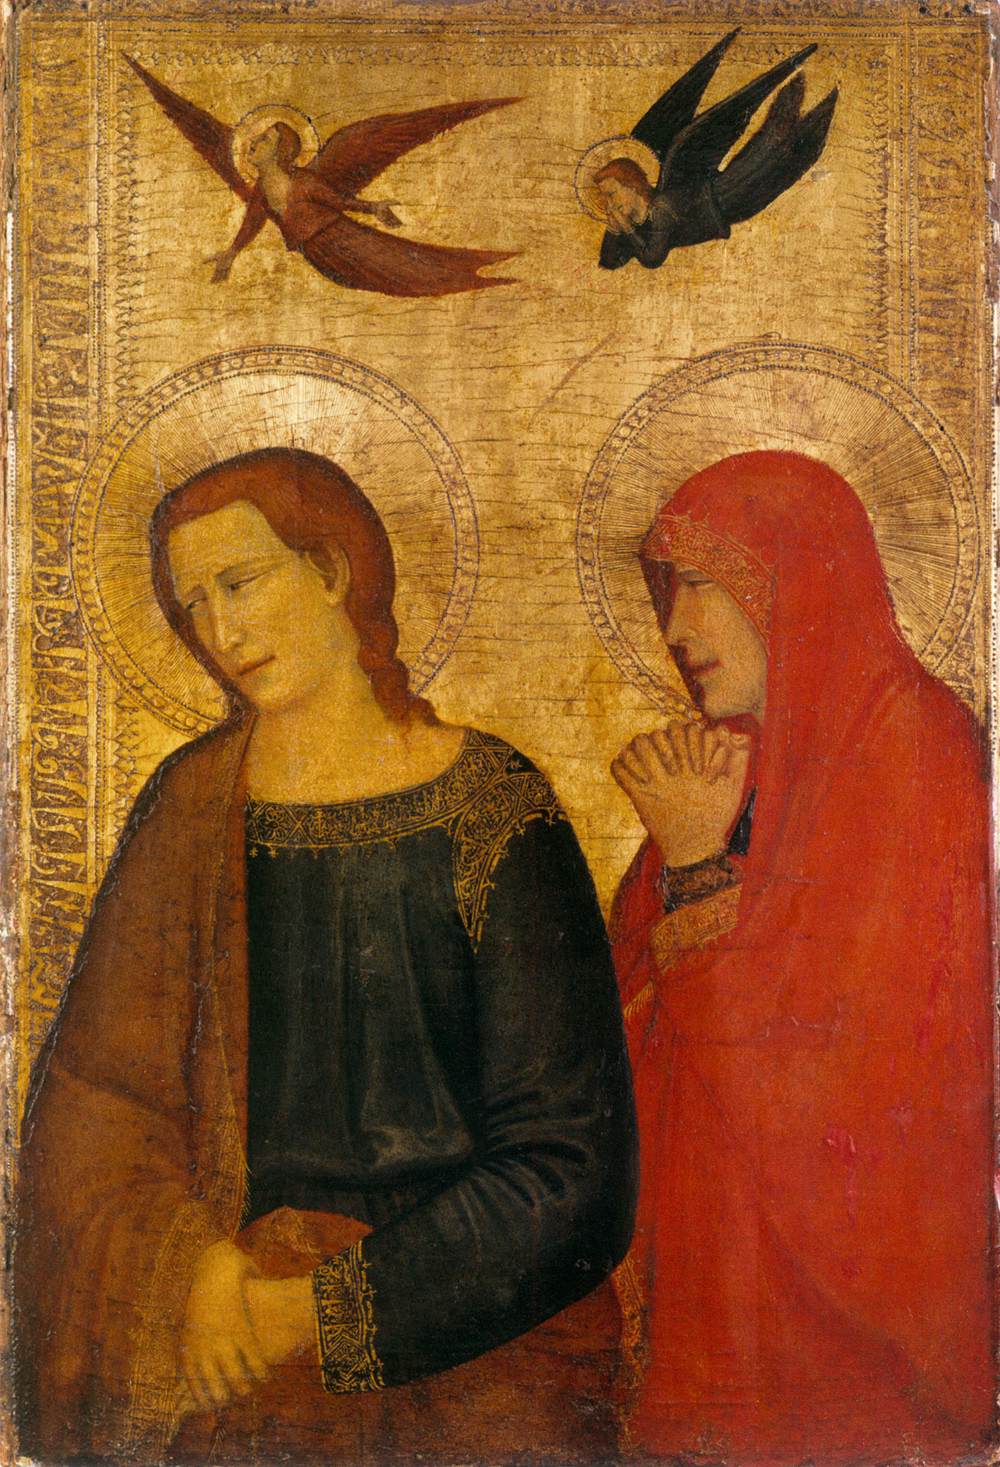 Saint John de evangelist en María Magdalena